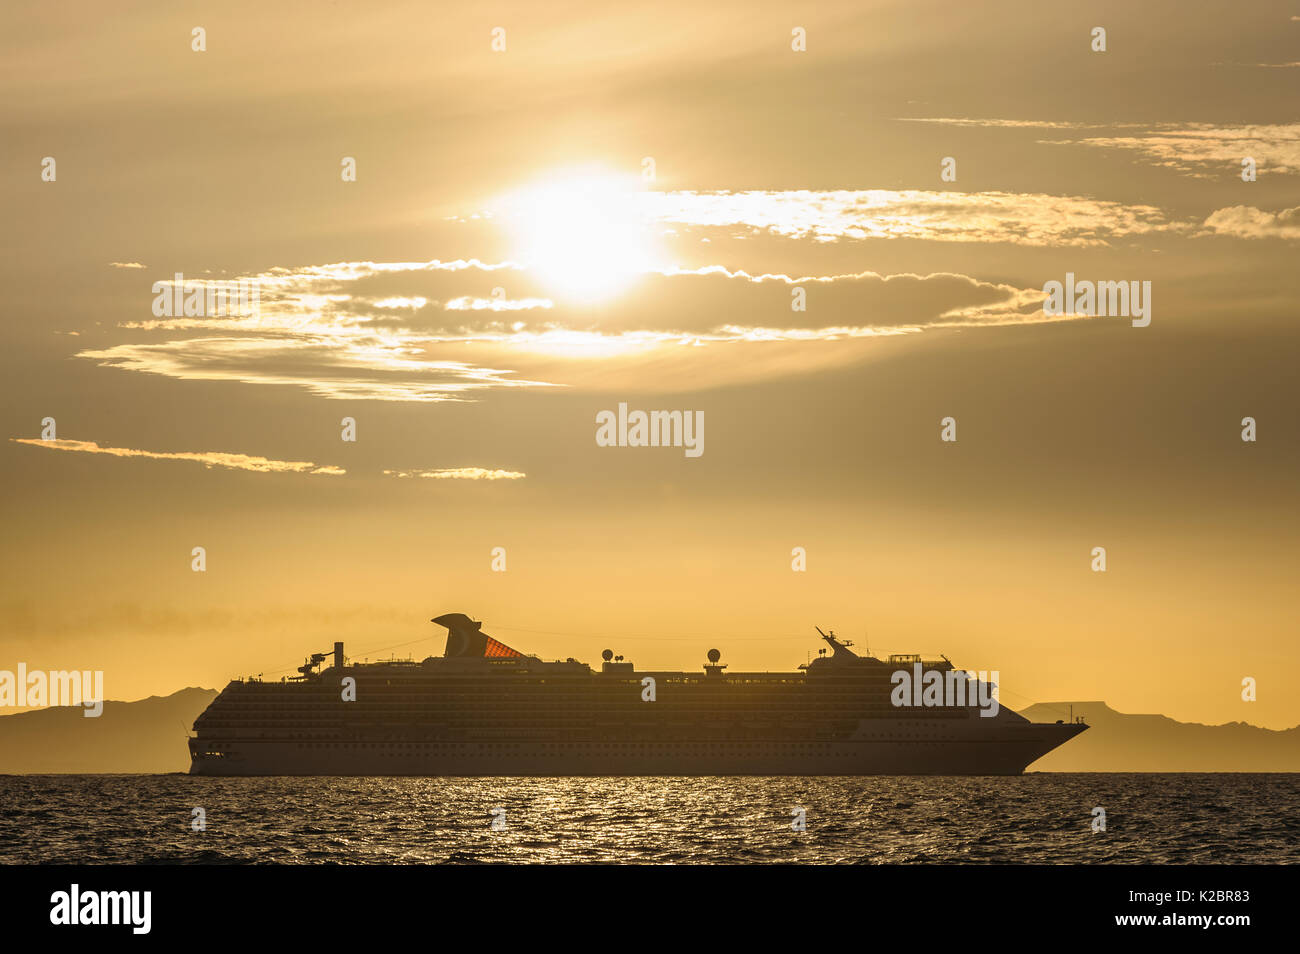 Kreuzfahrtschiff "Carnival Spirit' bei Sonnenuntergang, Golf von Kalifornien, Mexiko. Alle nicht-redaktionelle Verwendungen muß einzeln beendet werden. Stockfoto